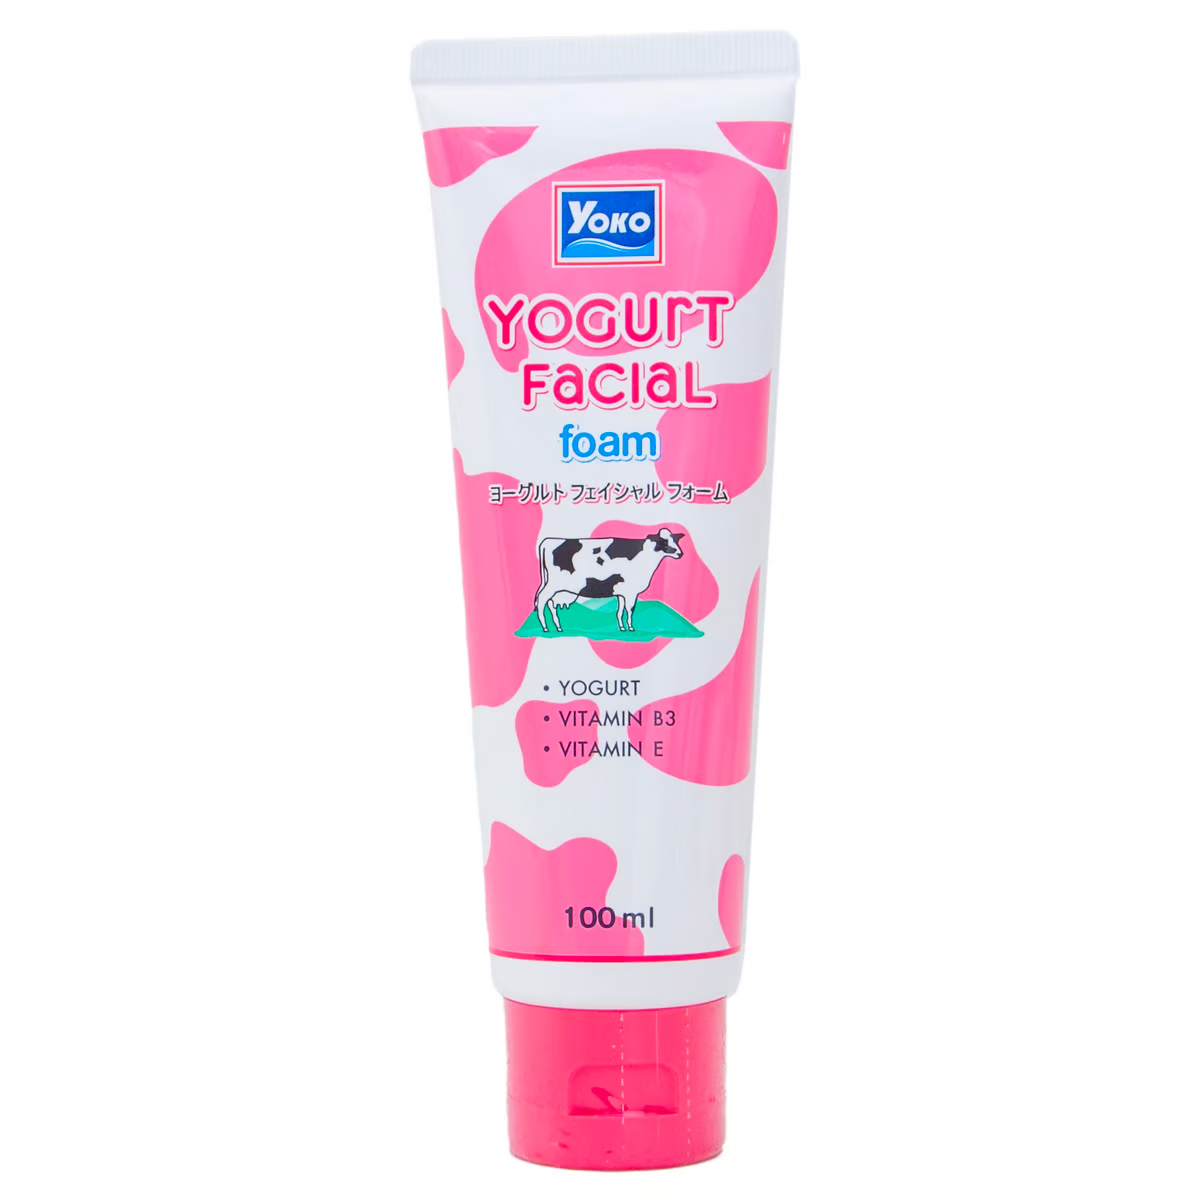 Yoko Yogurt Facial Foam (100gr)